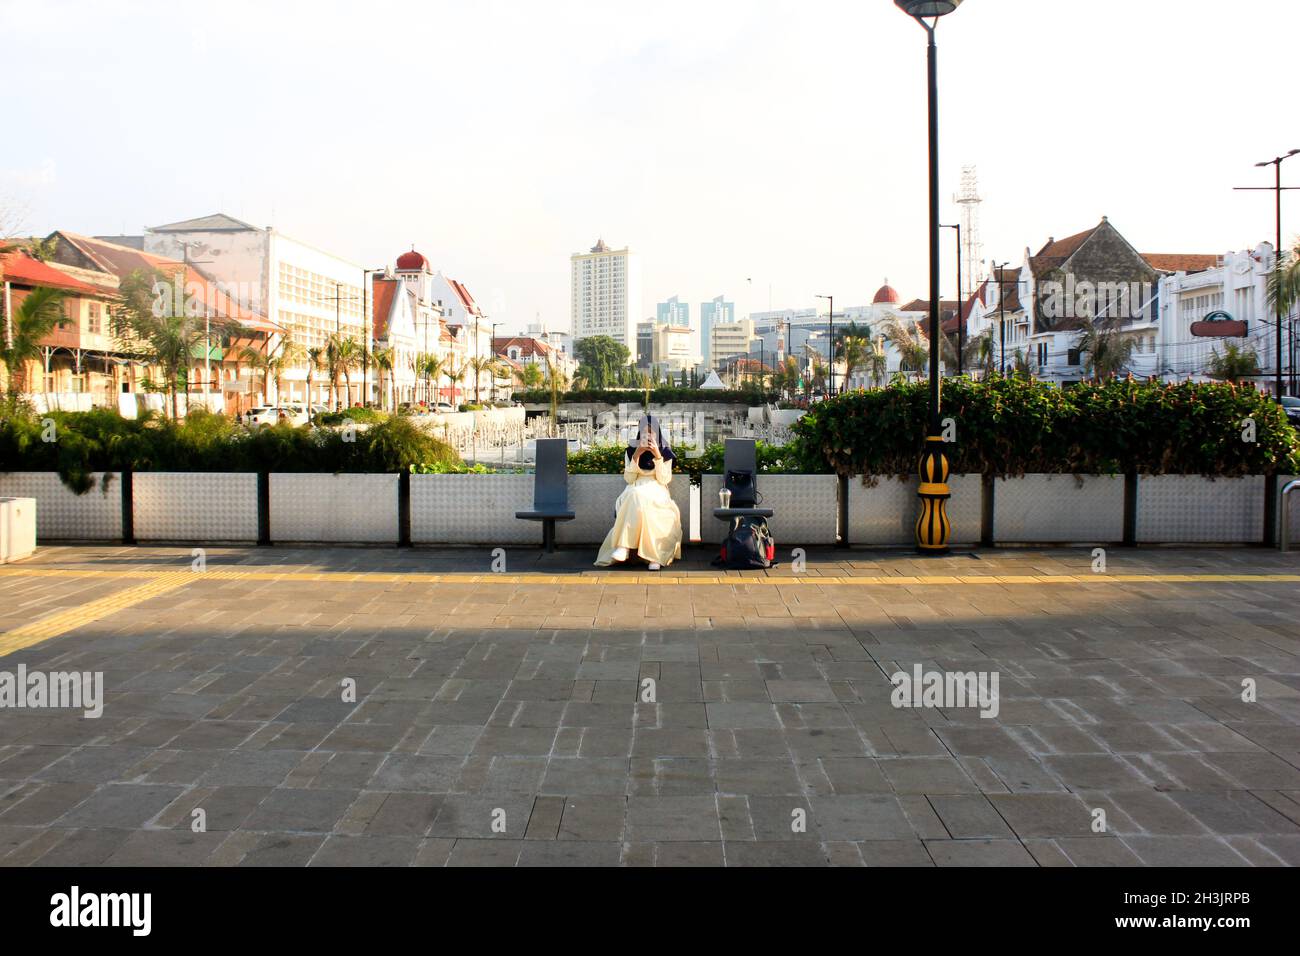 Eine Frau im Hijab-Schleier schaute auf ihr Telefon, während sie auf einer Bank in der Nähe eines Kanals in der Altstadt von Jakarta Kota, Jakarta, Indonesien, saß Stockfoto